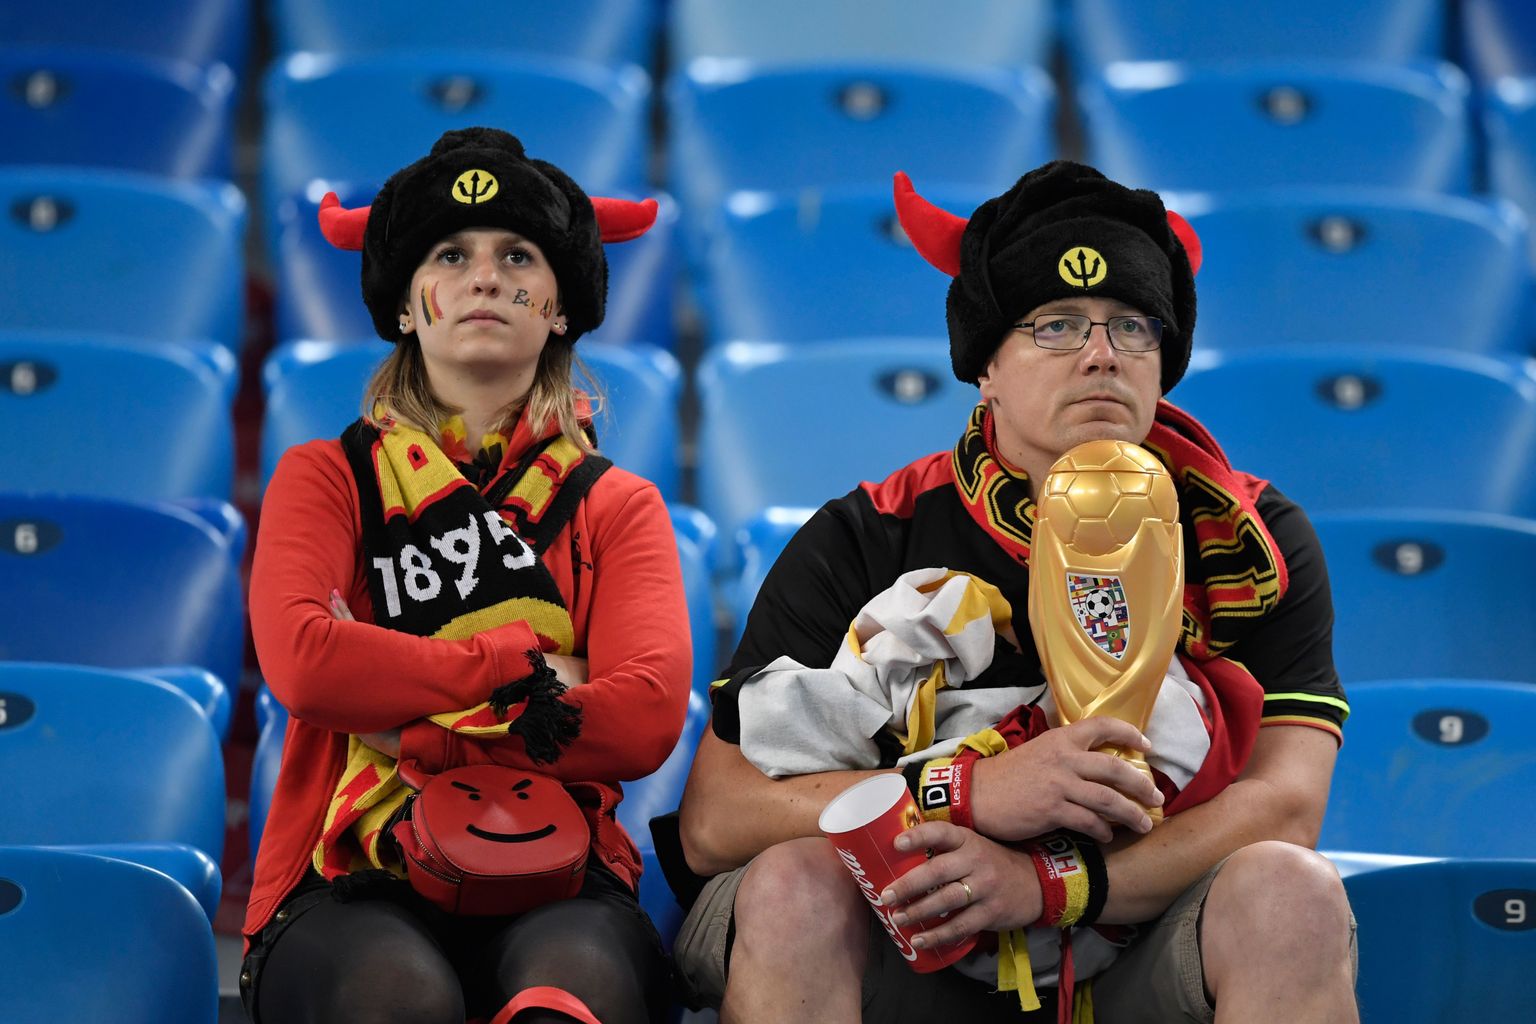 Kas Belgia jalgpallikoondisel avaneb enam nii hea võimalus MM-tiitlit püüda? 2022. aastal ei pruugi tervik enam nii vägev olla